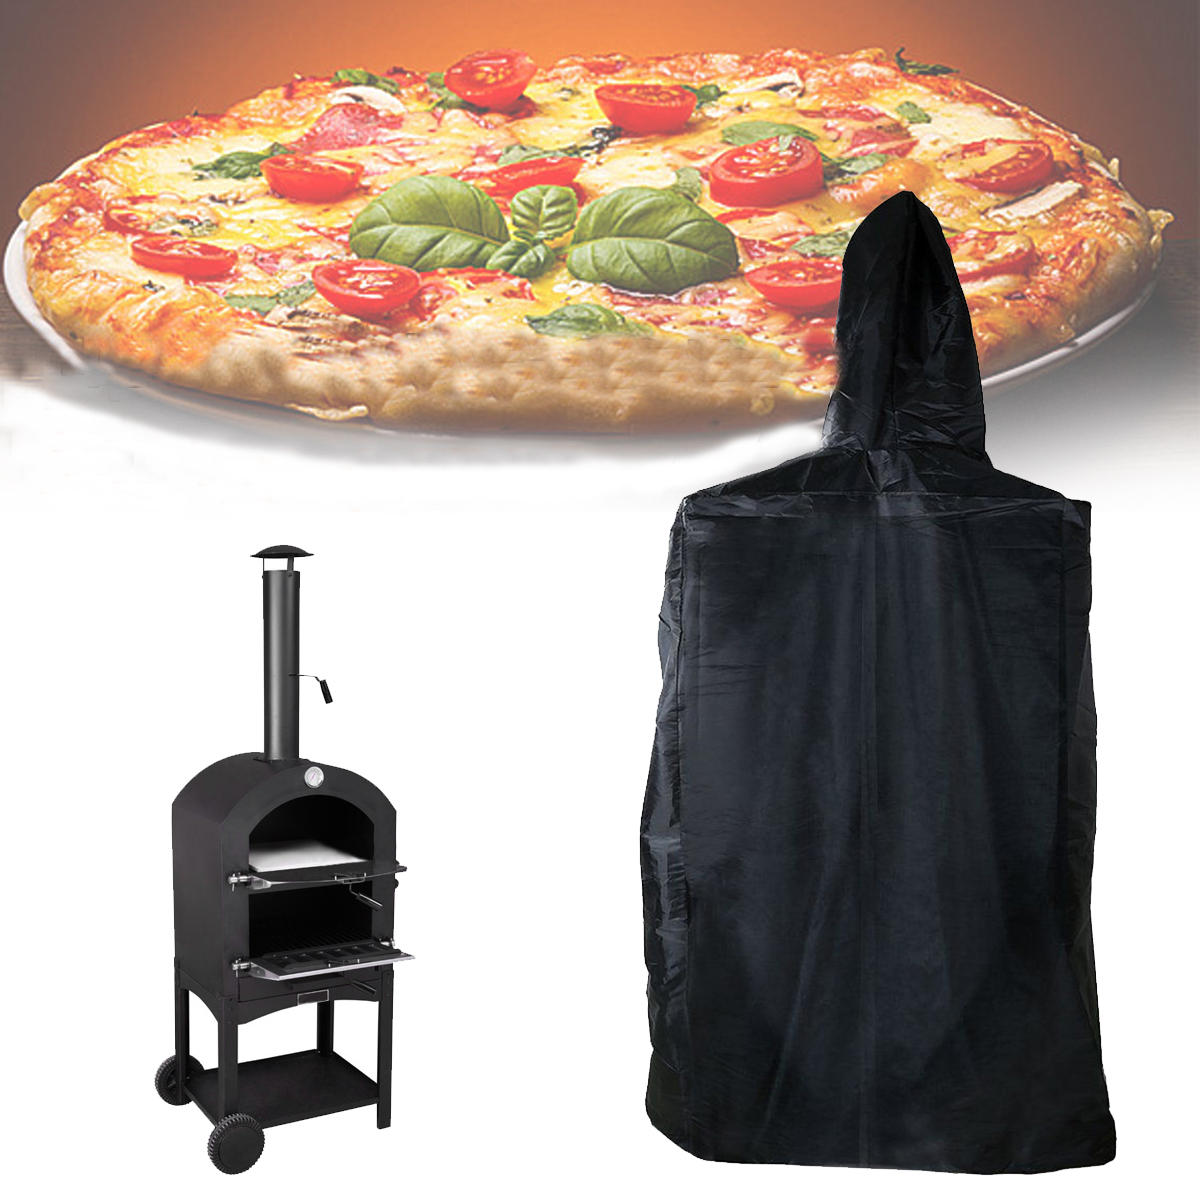 ançais: Housse pour four à pizza extérieur de 160x37x50cm, étanche à l'eau, à la poussière et aux UV.